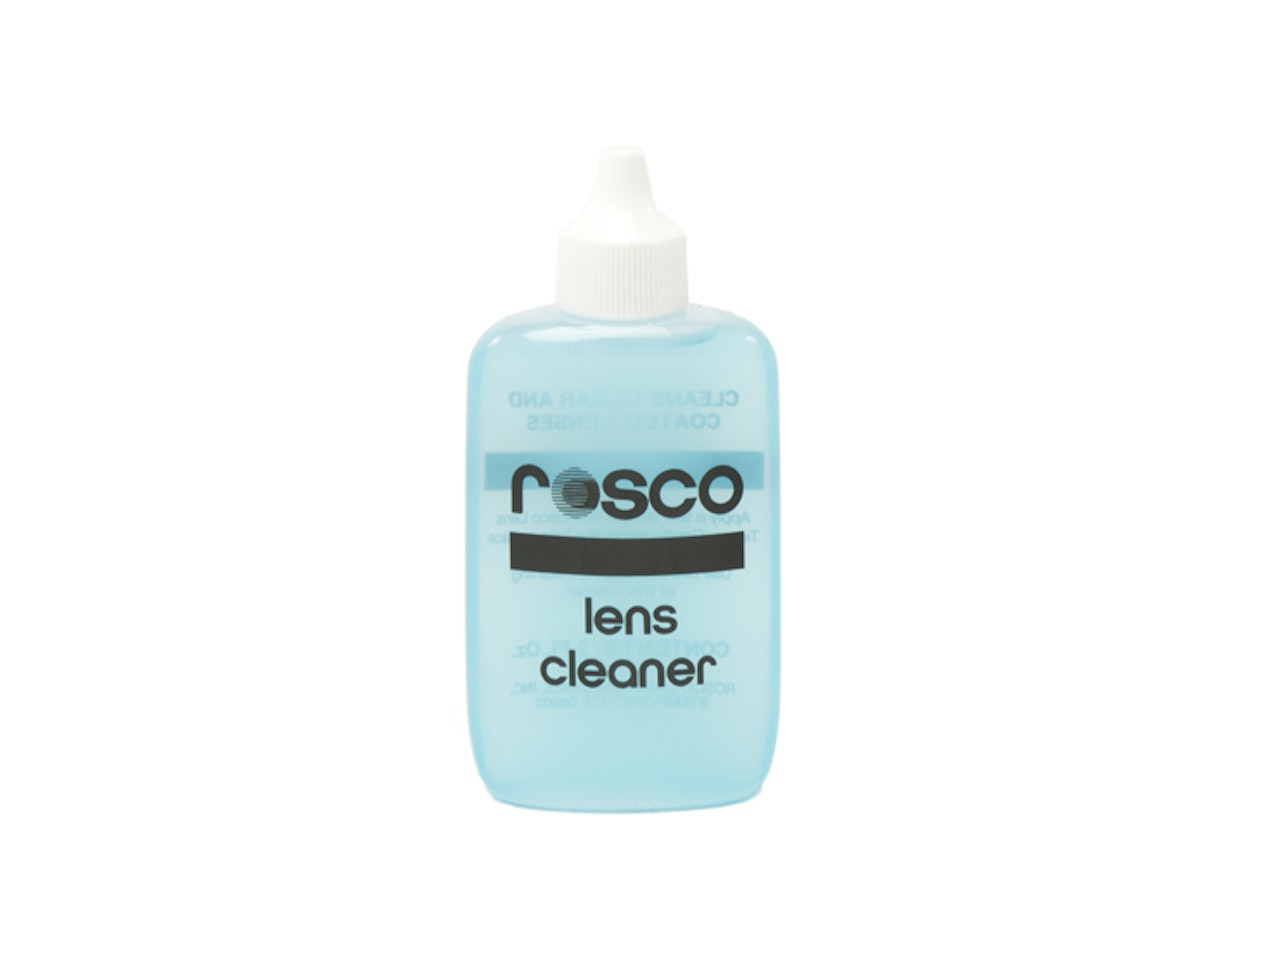 Rosco Lens Cleaner dripbottle 60ml